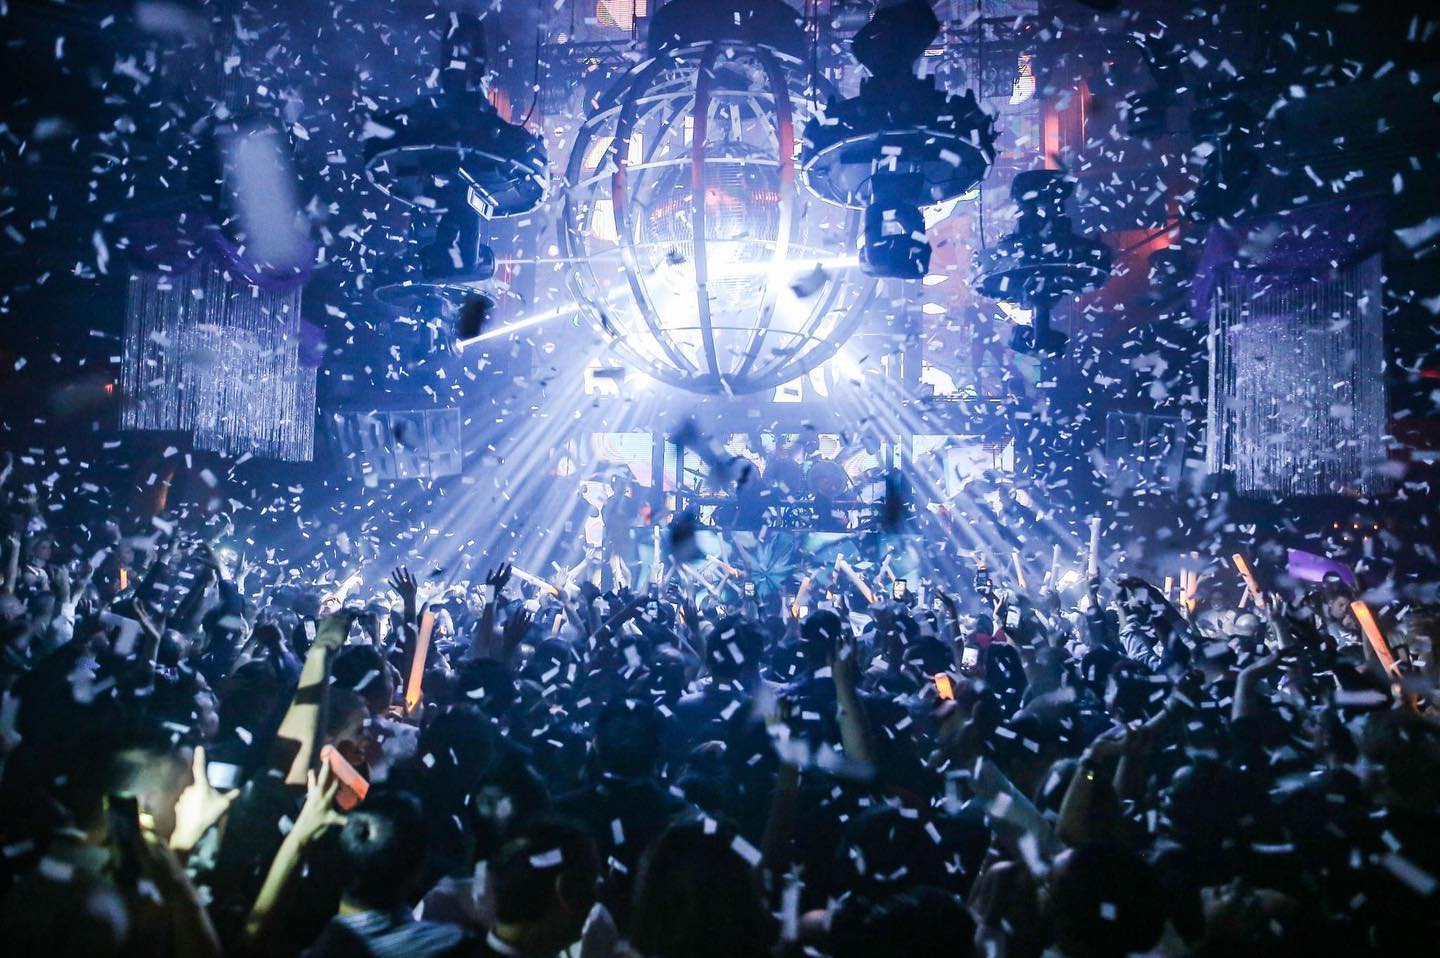 10 Best Nightclubs in Vegas  Reviewed by Las Vegas Nightclubs